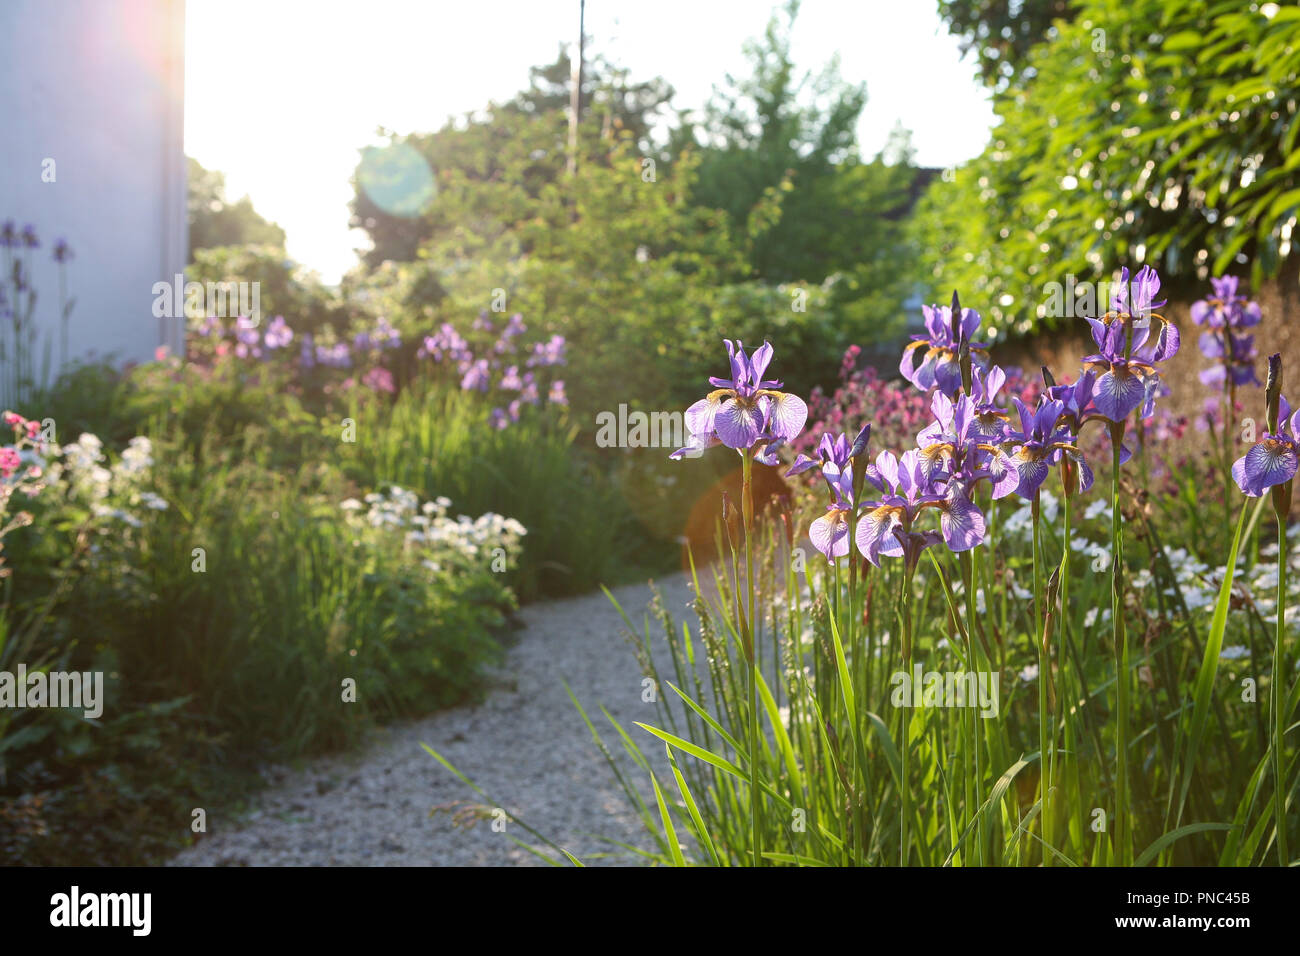 Iris sibirica 'Tropic Night' in a garden border Stock Photo